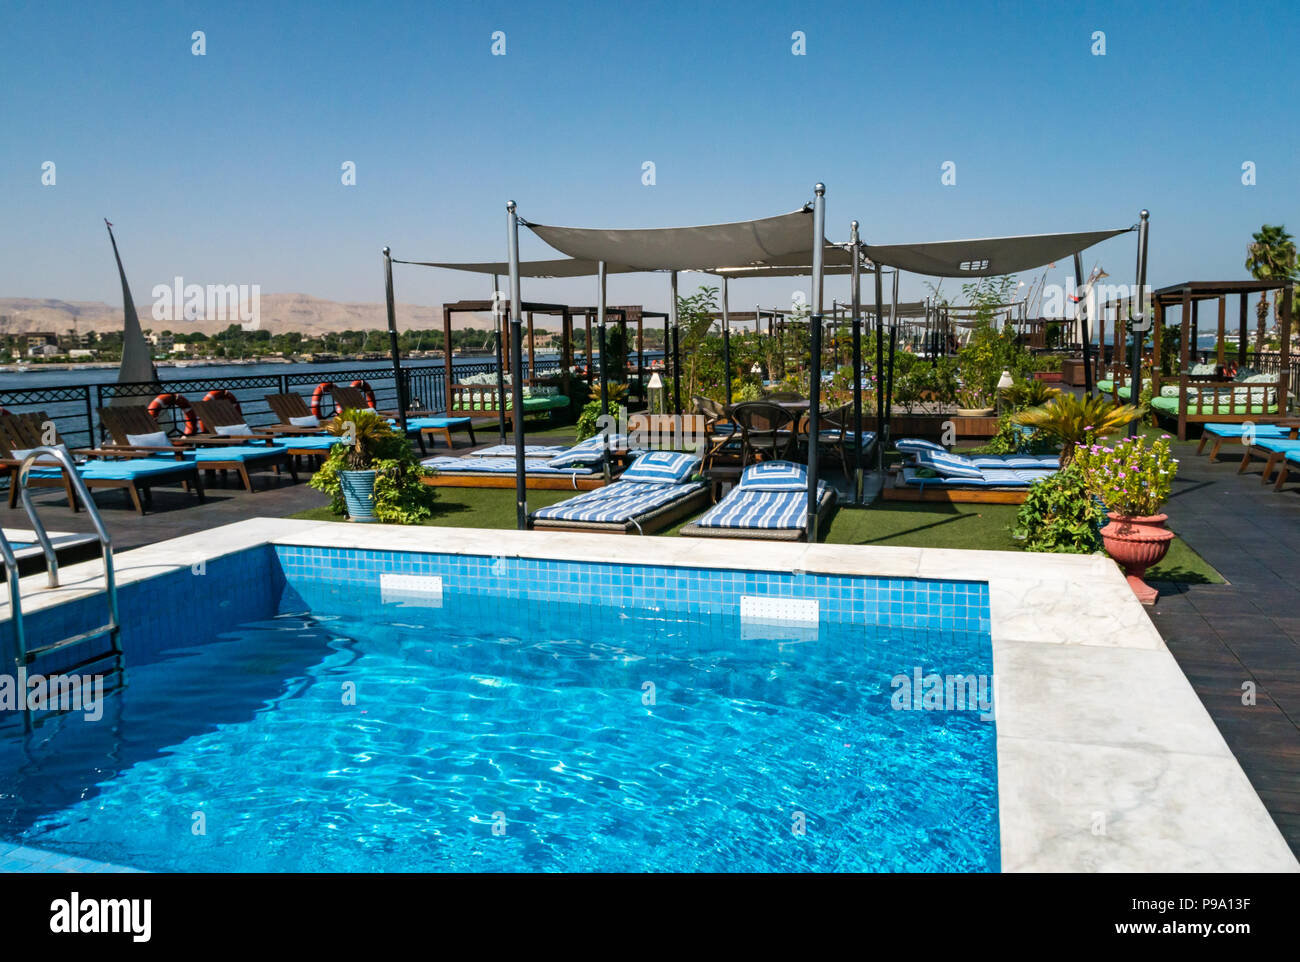 Piscine extérieure sur la terrasse avec chaises longues à bord Mme Mayfair, Nil, bateau de croisière, l'Égypte, l'Afrique Banque D'Images